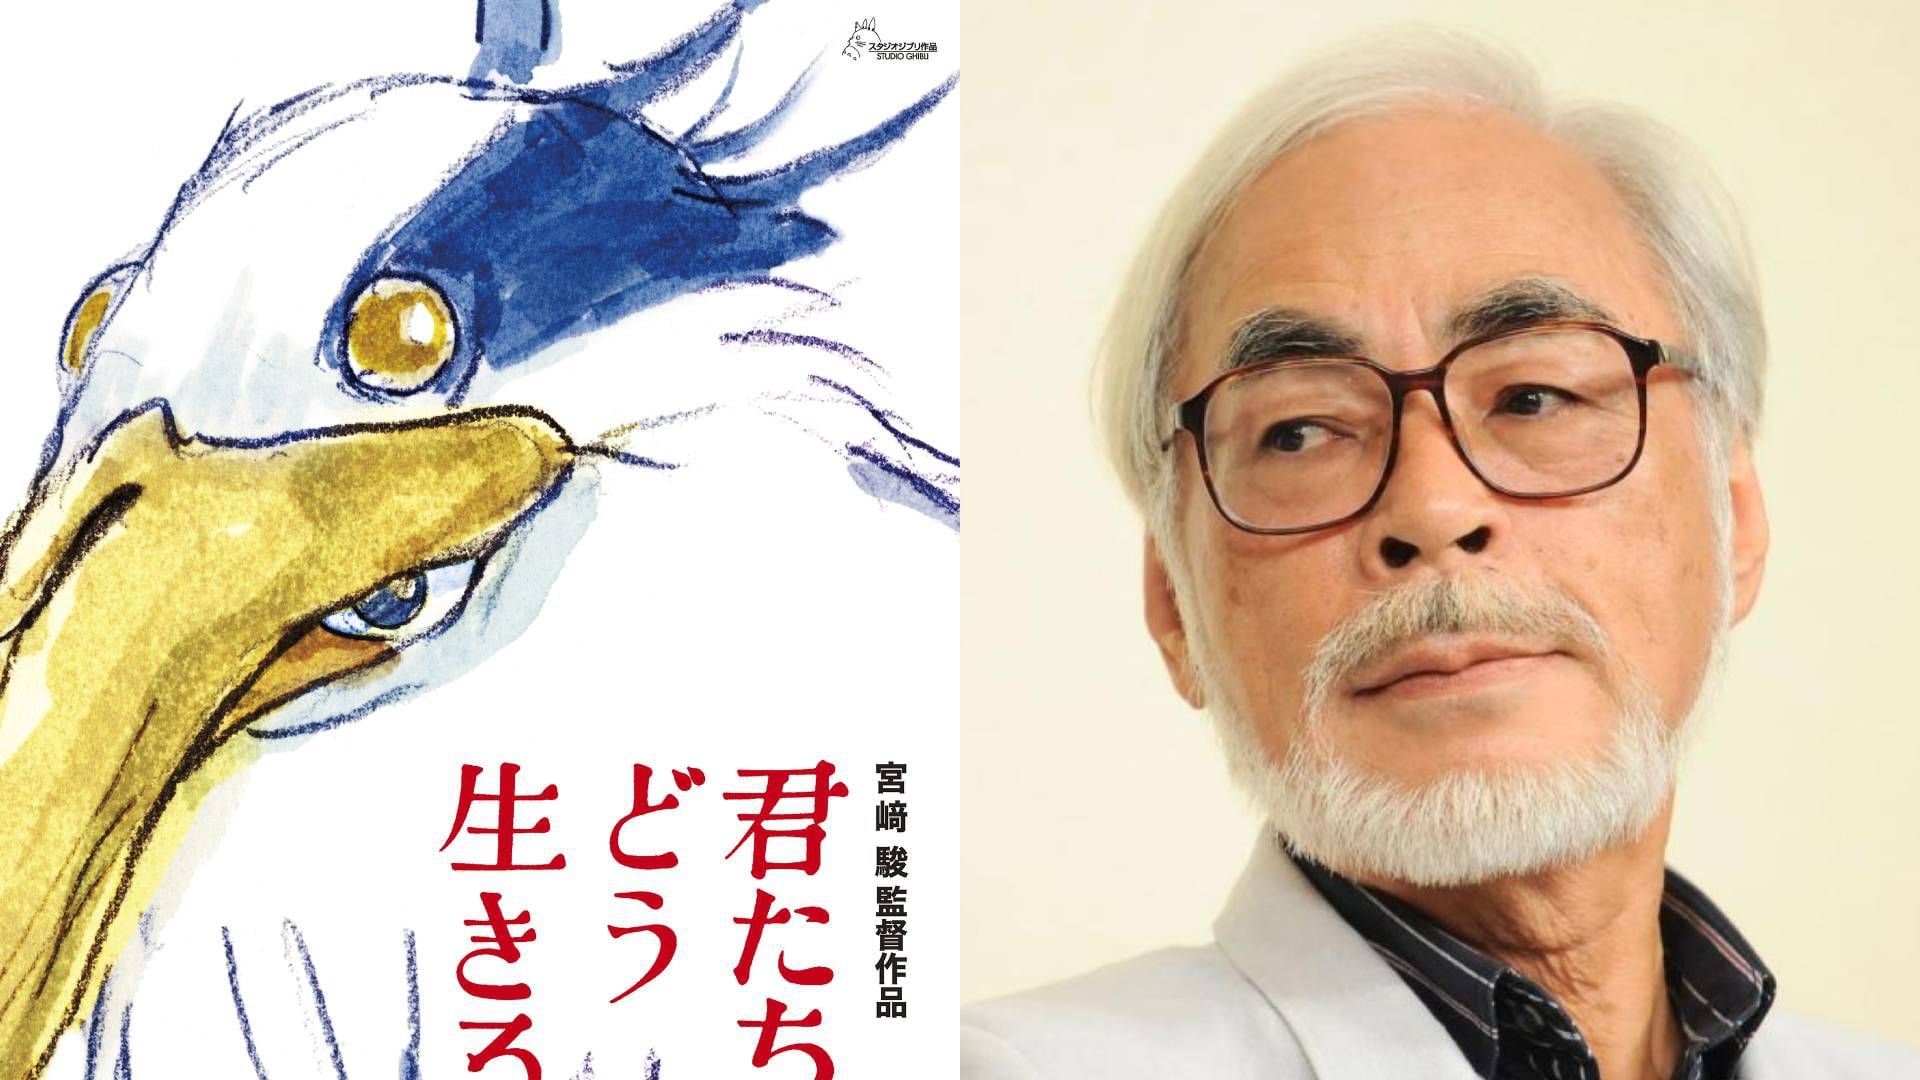 Studio Ghibli: Hayao Miyazaki asegura que su nueva película será una  fantasía a gran escala